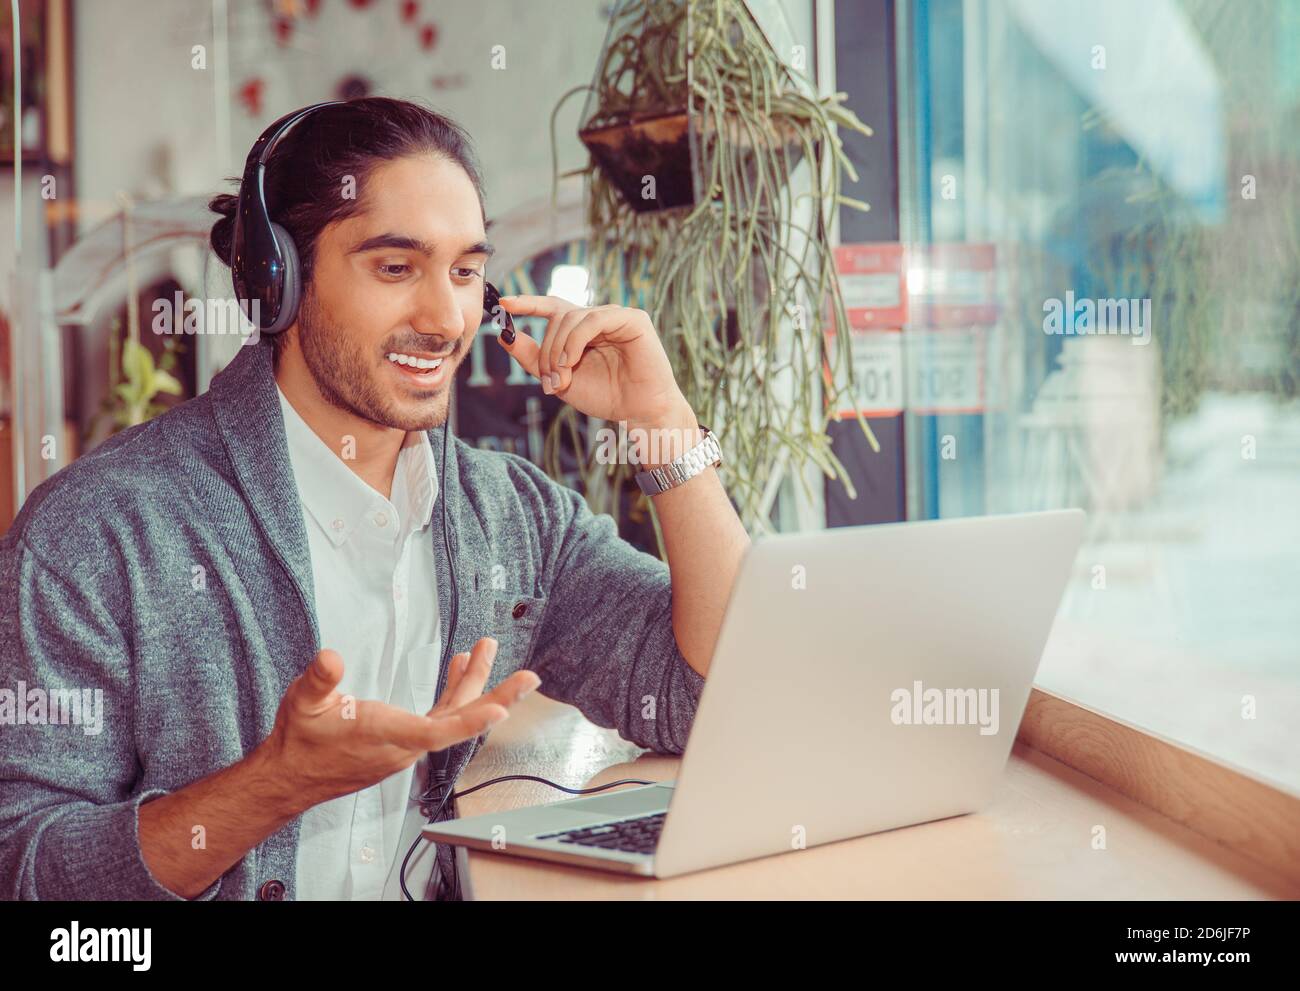 Mann lächelnd mit einem on-line-Gespräch am Laptop Bildschirm suchen, erklärt etwas zu Hause gestikulierend im Wohnzimmer, in der Nähe der Fenster holding Kopf Stockfoto